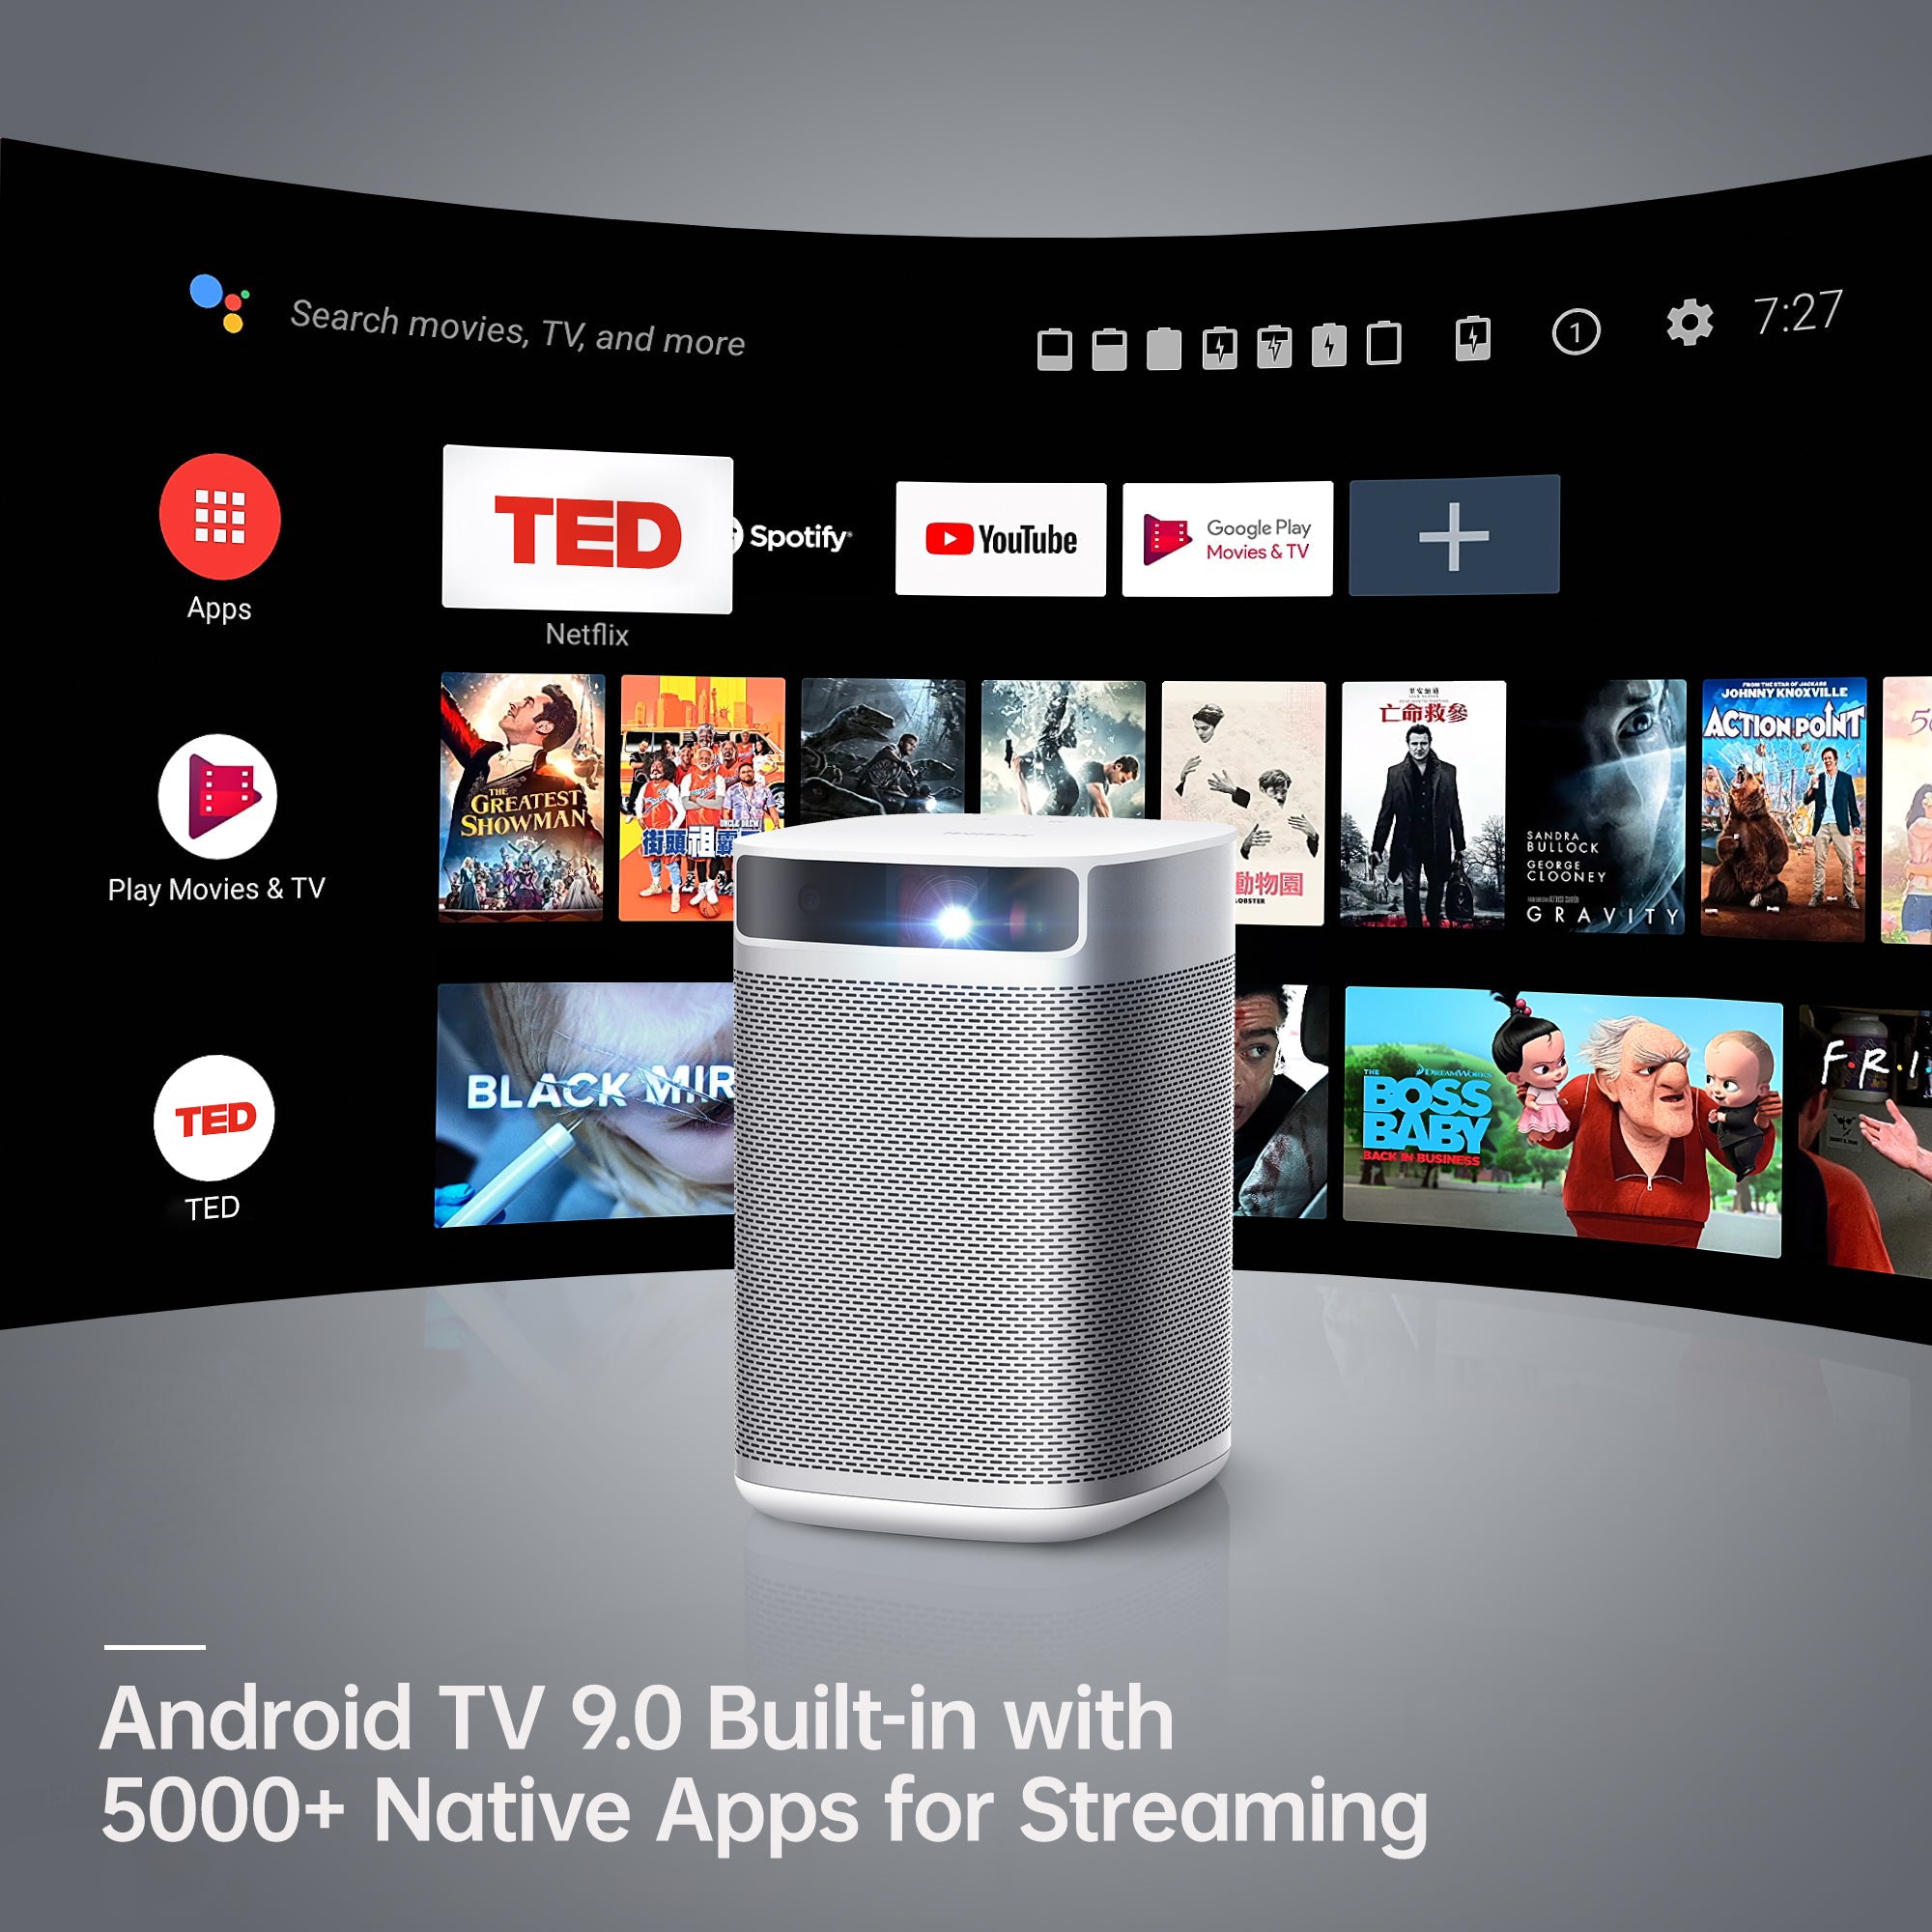 MoGo Pro - pico proyector 1080p - Android TV™ OS incorporado